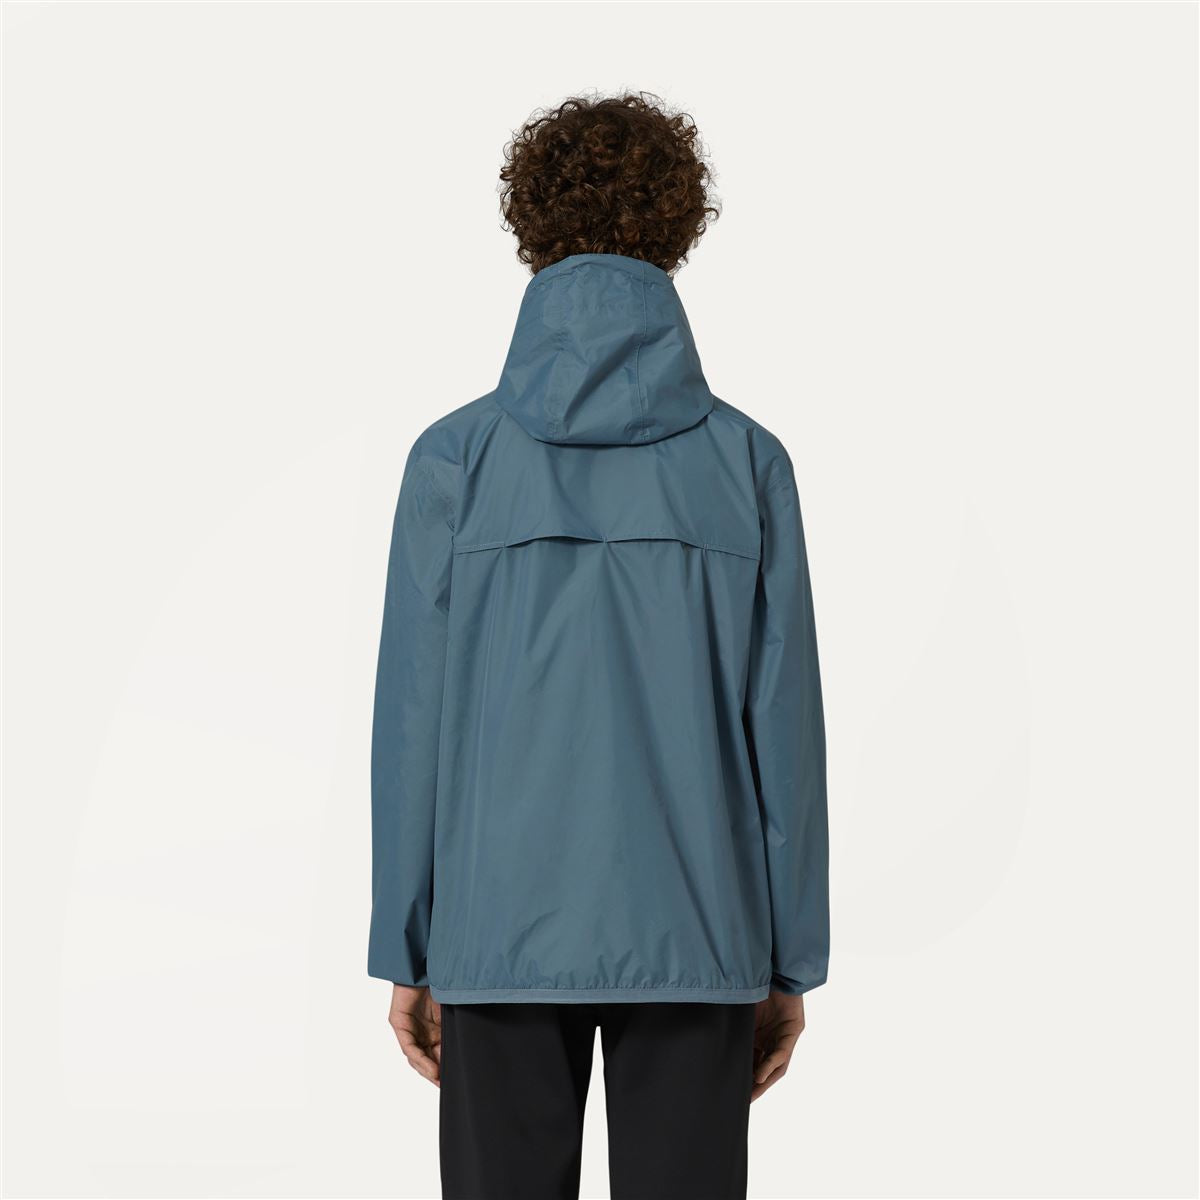 Claude - Unisex Packable Full Zip Waterproof  Rain Jacket in Grey Everest